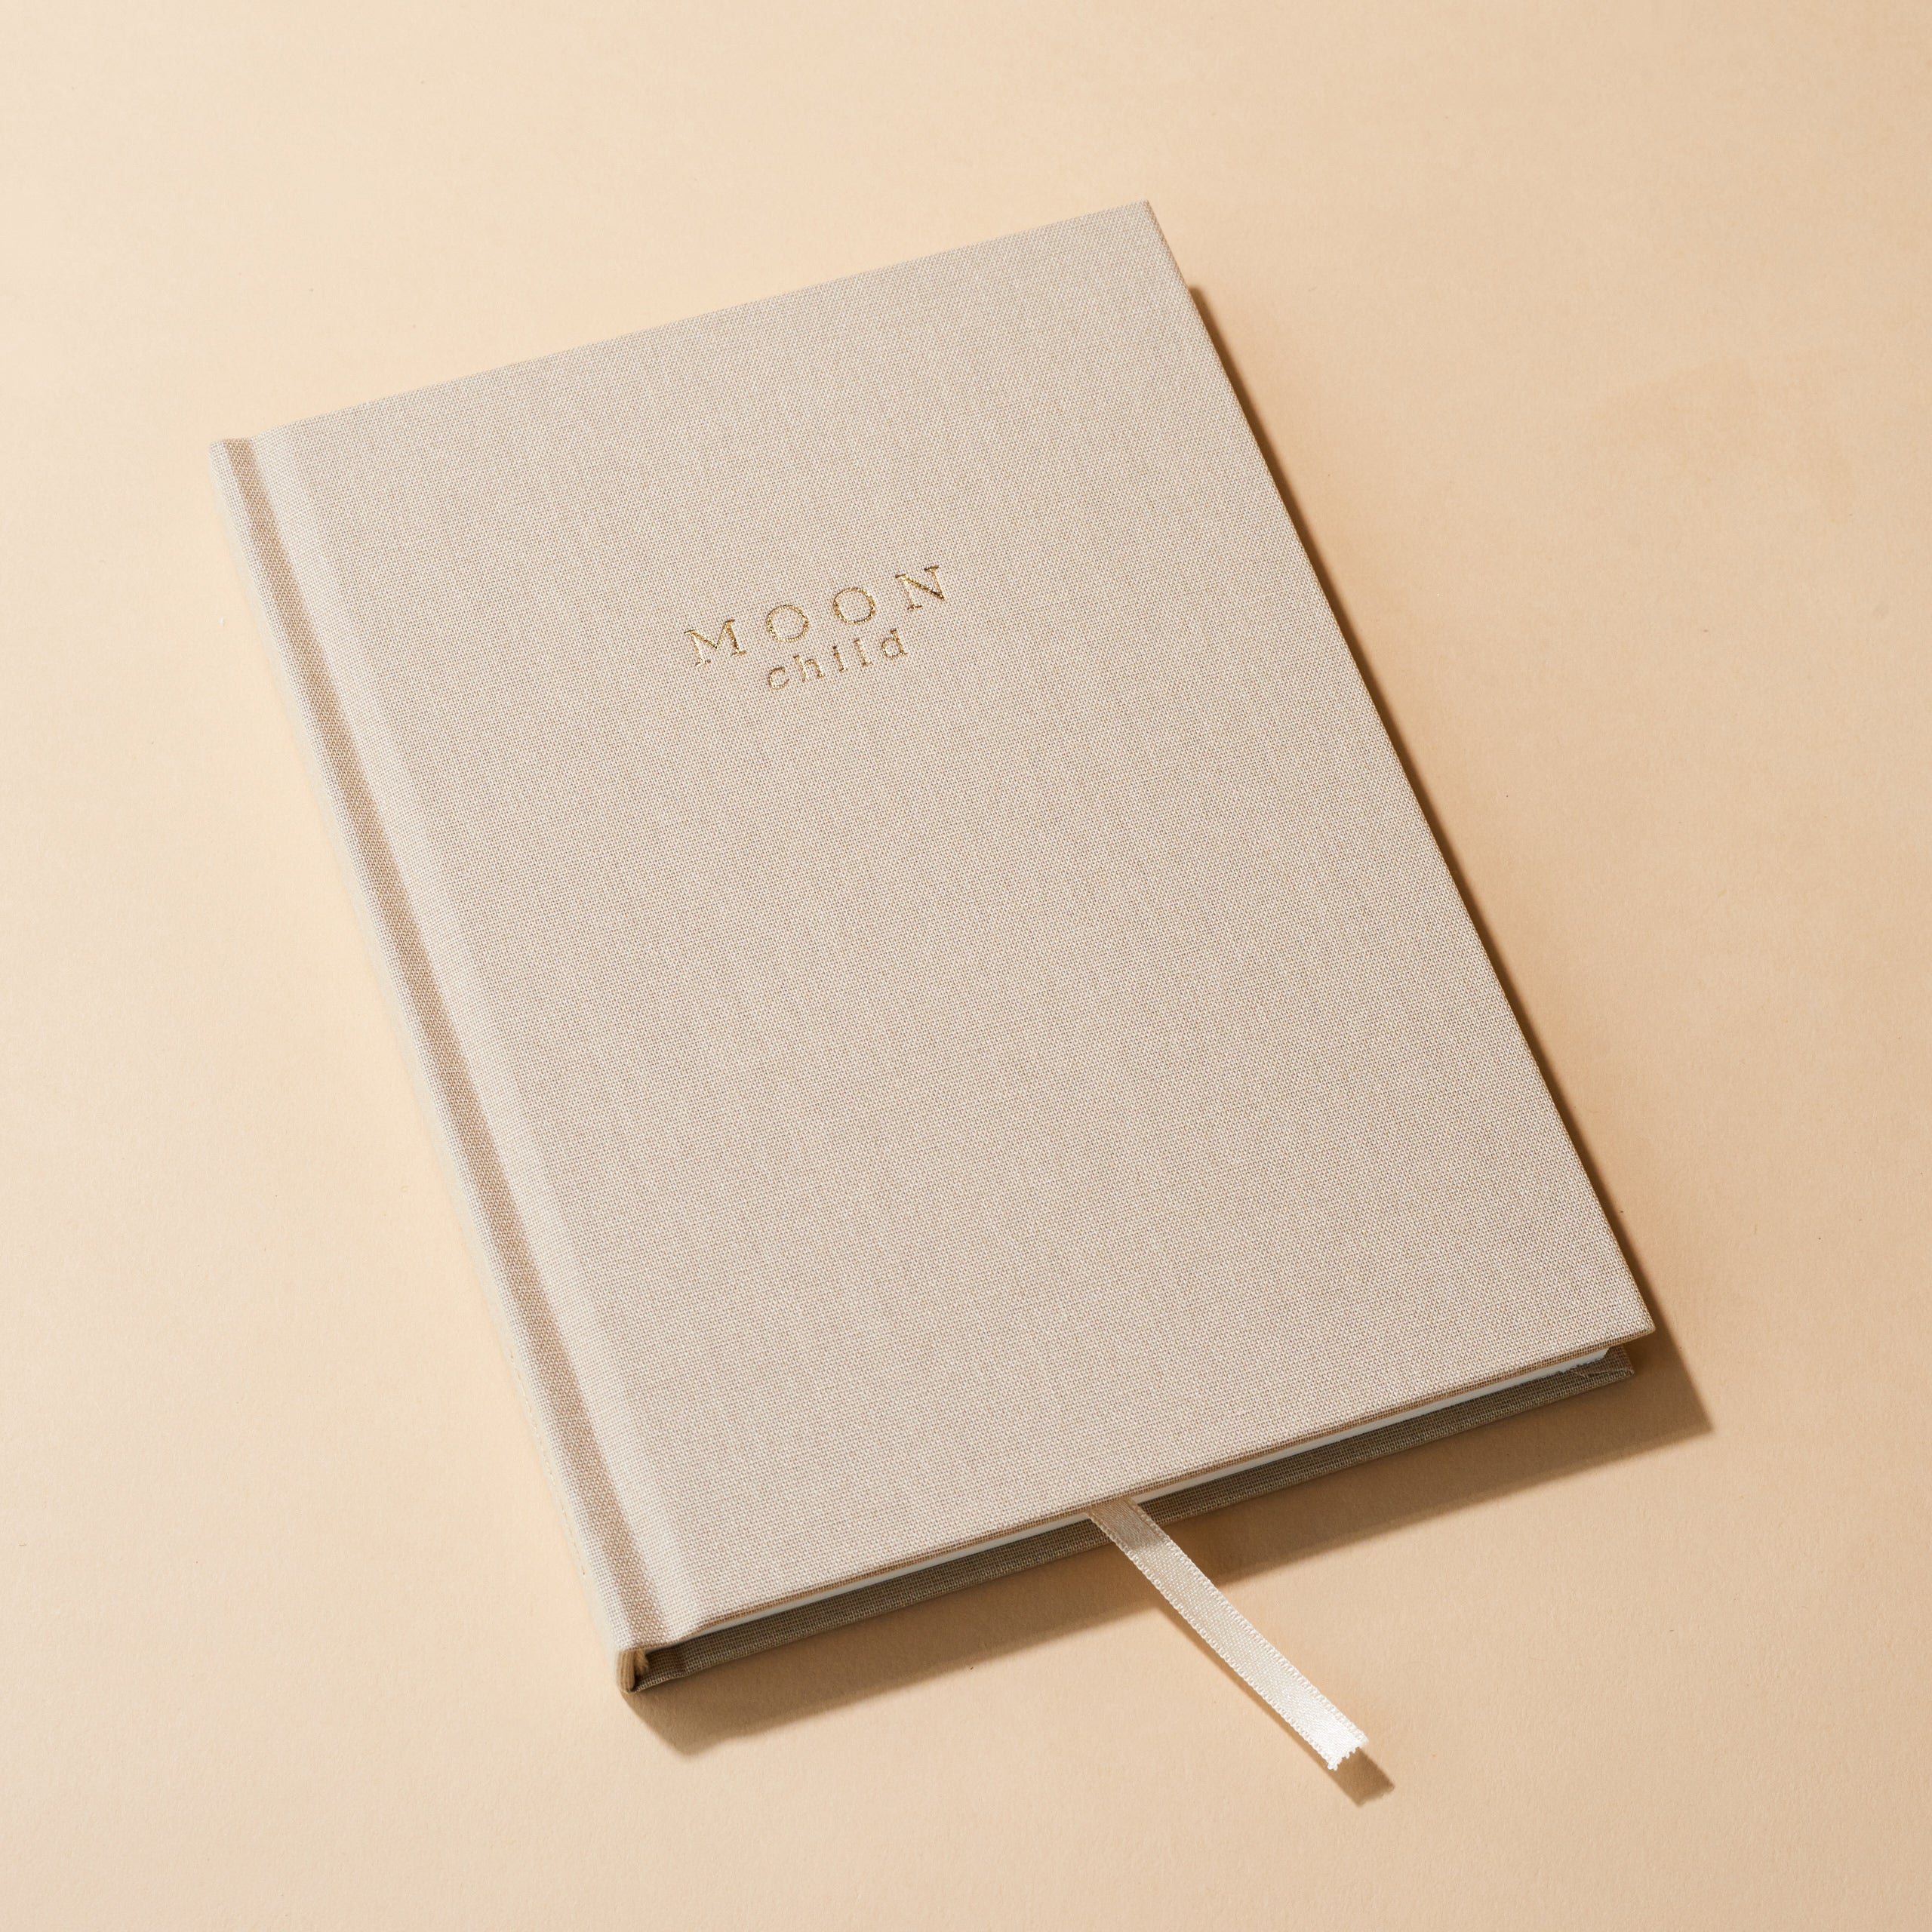 Luxury Notebook - 'Moon Child